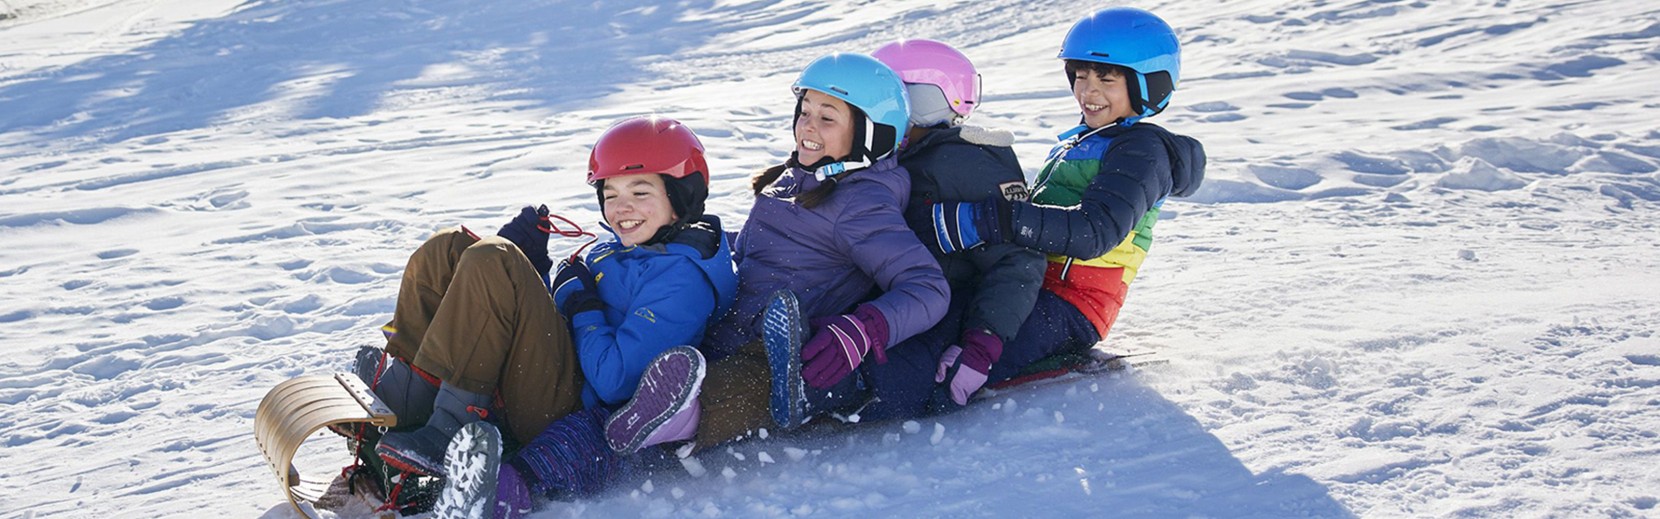 Four kids sledding on snow tubes